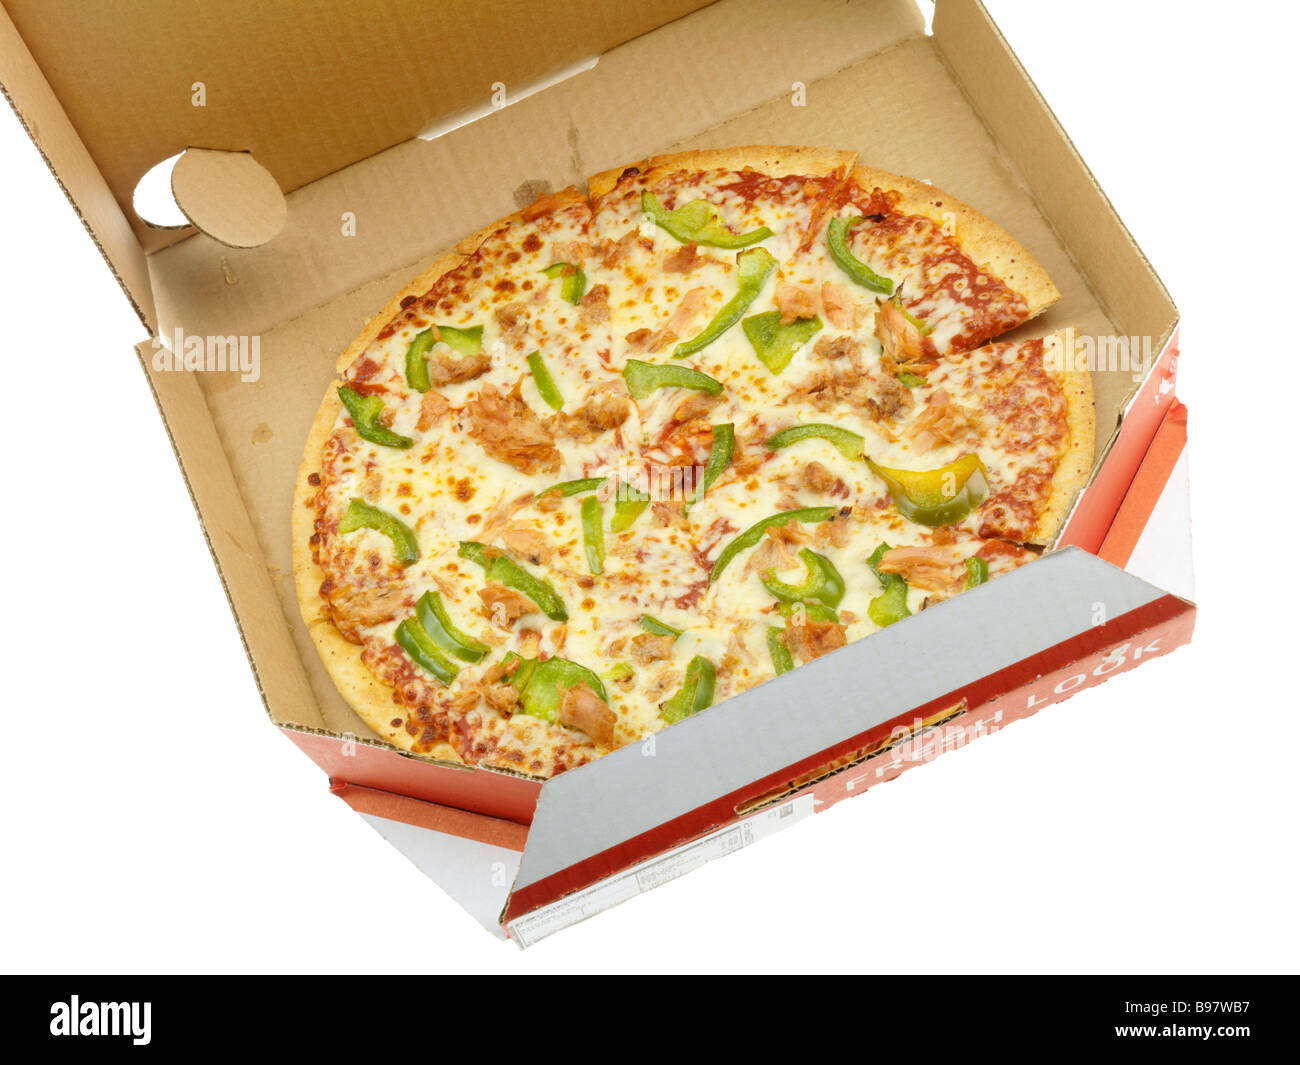 Marke Dominos Takeaway Home Delivery Pizza Kartons oder Box Isoliert gegen einen weißen Hintergrund mit keine Menschen und einen Freistellungspfad Stockfoto